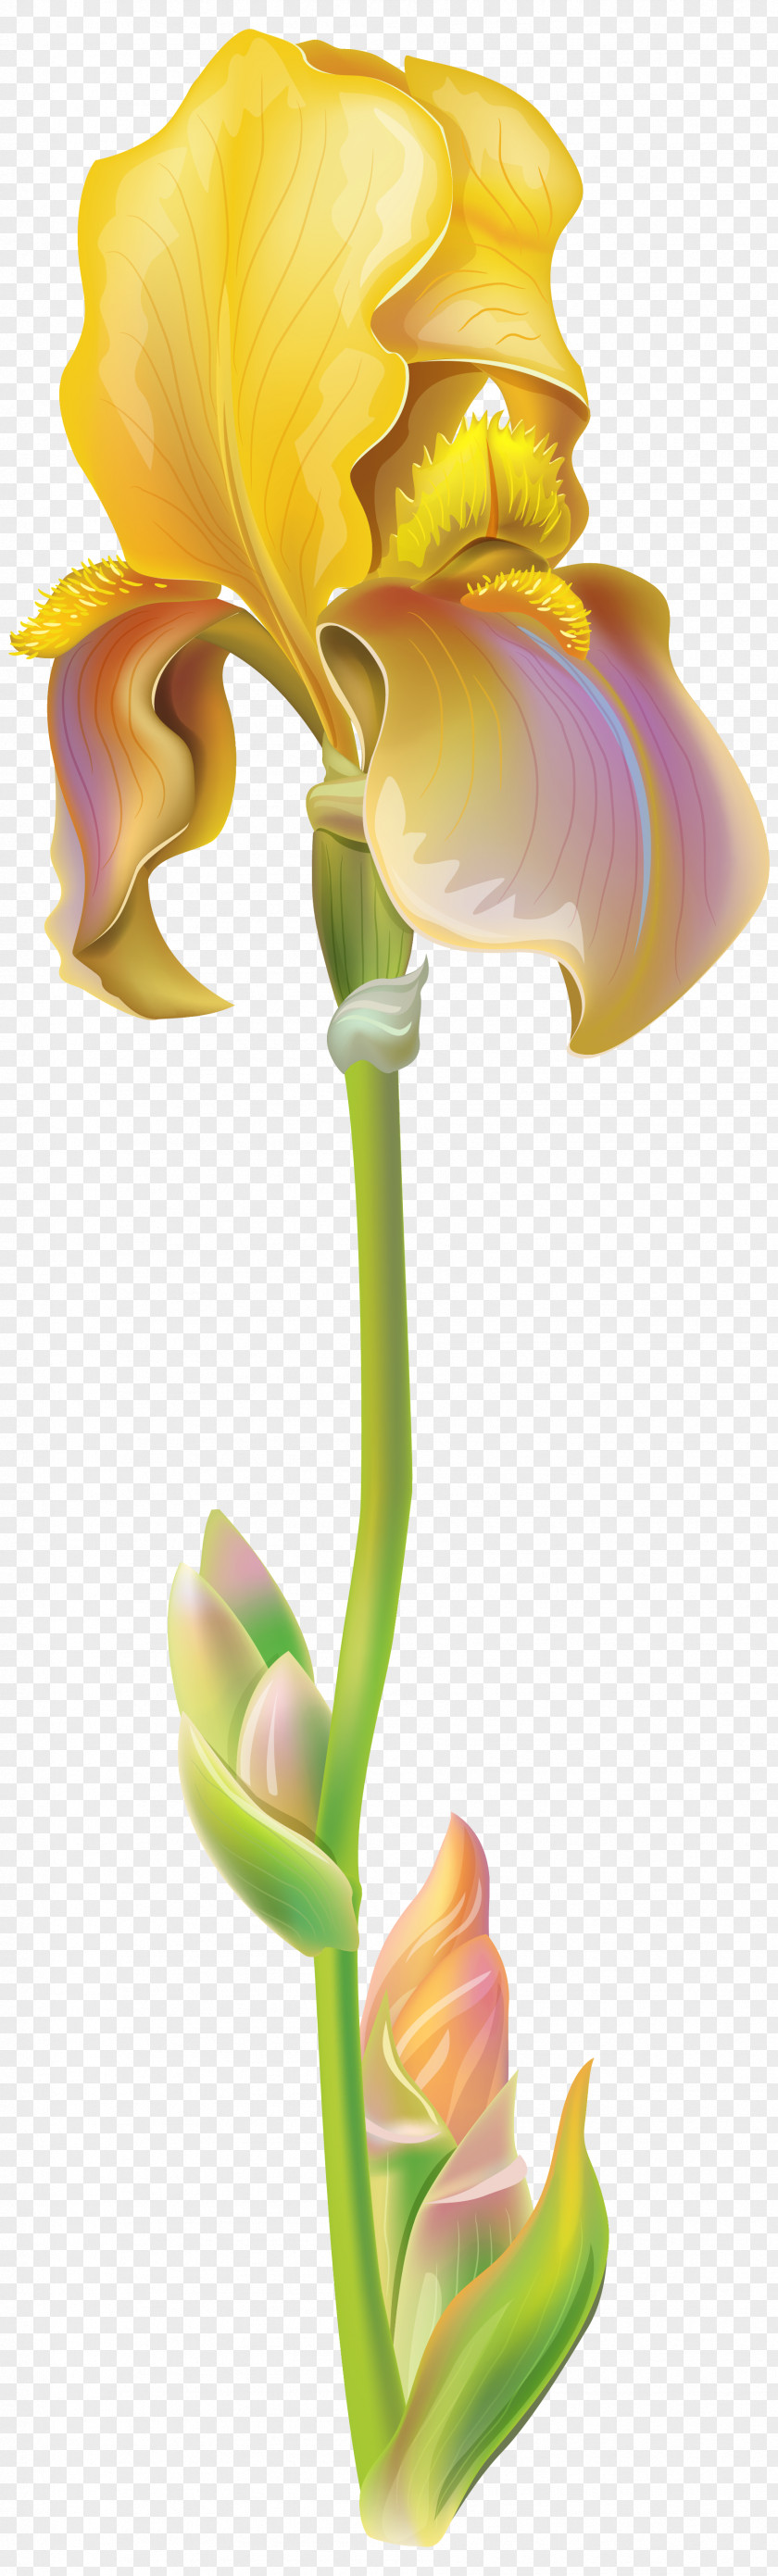 Purple Iris Flower Clipart Image Versicolor Cristata Clip Art PNG